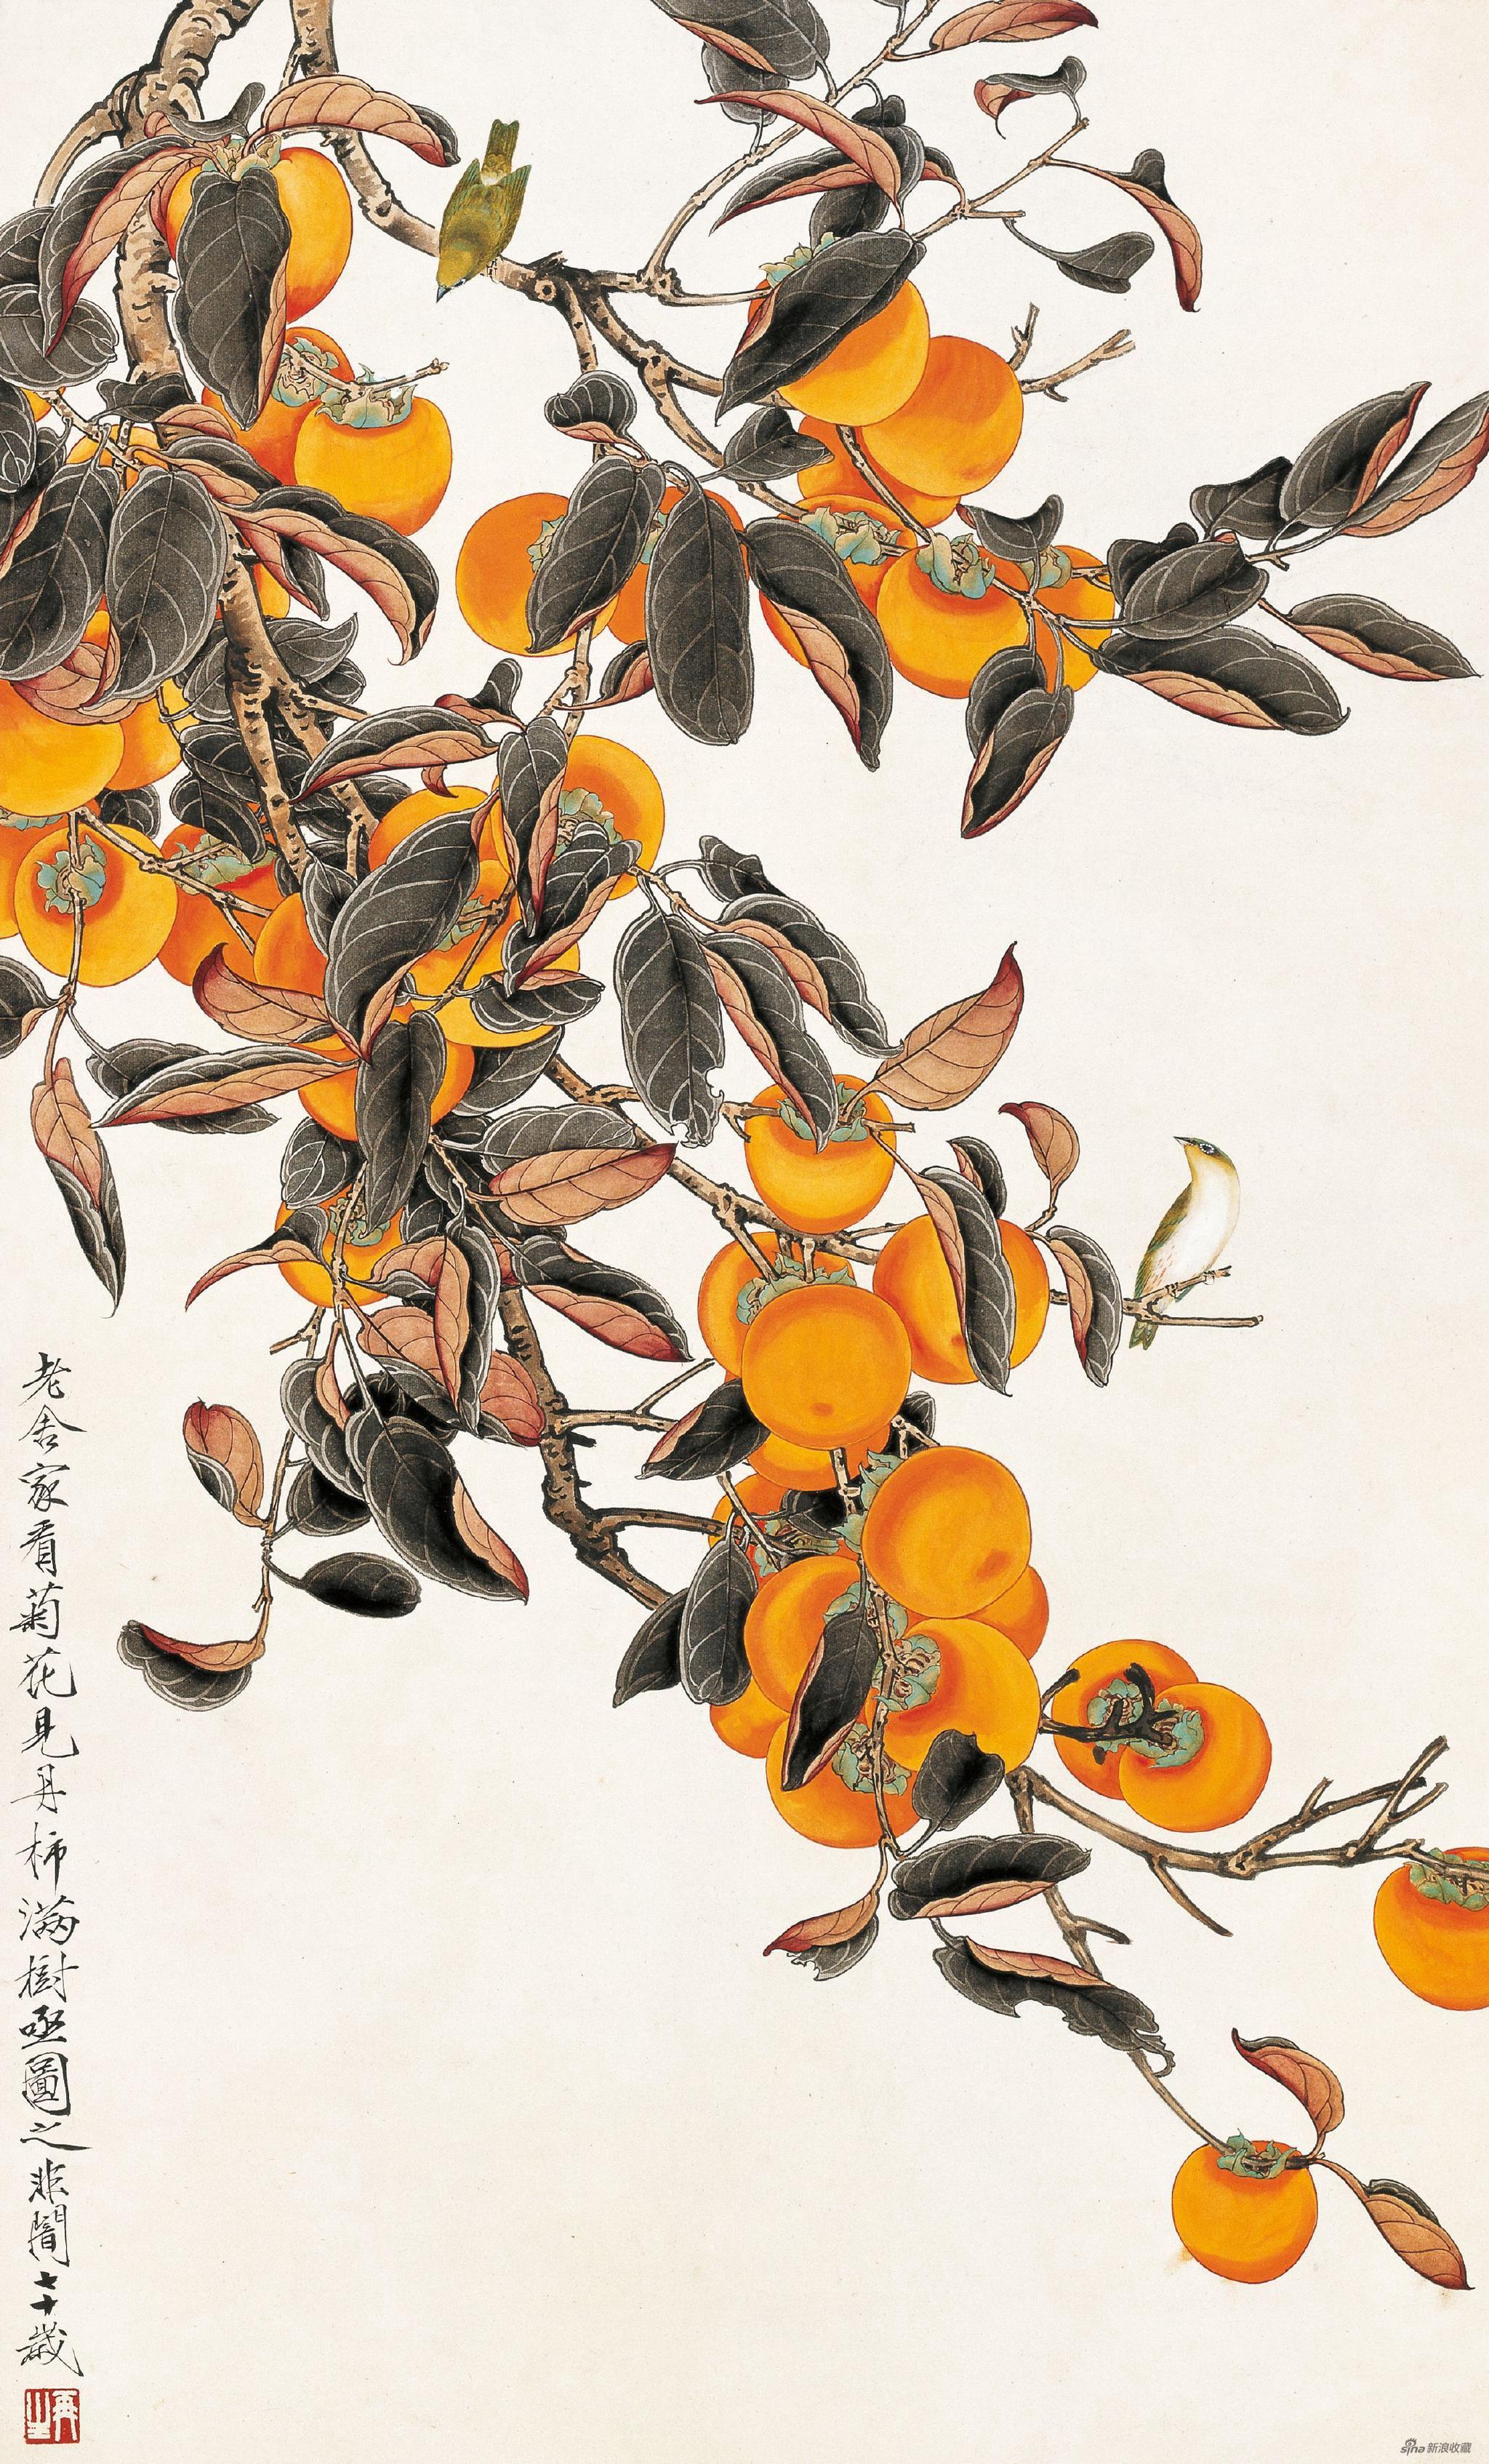 丹柿图 于非闇 95cm×58cm 纸本设色 1959年 北京画院藏